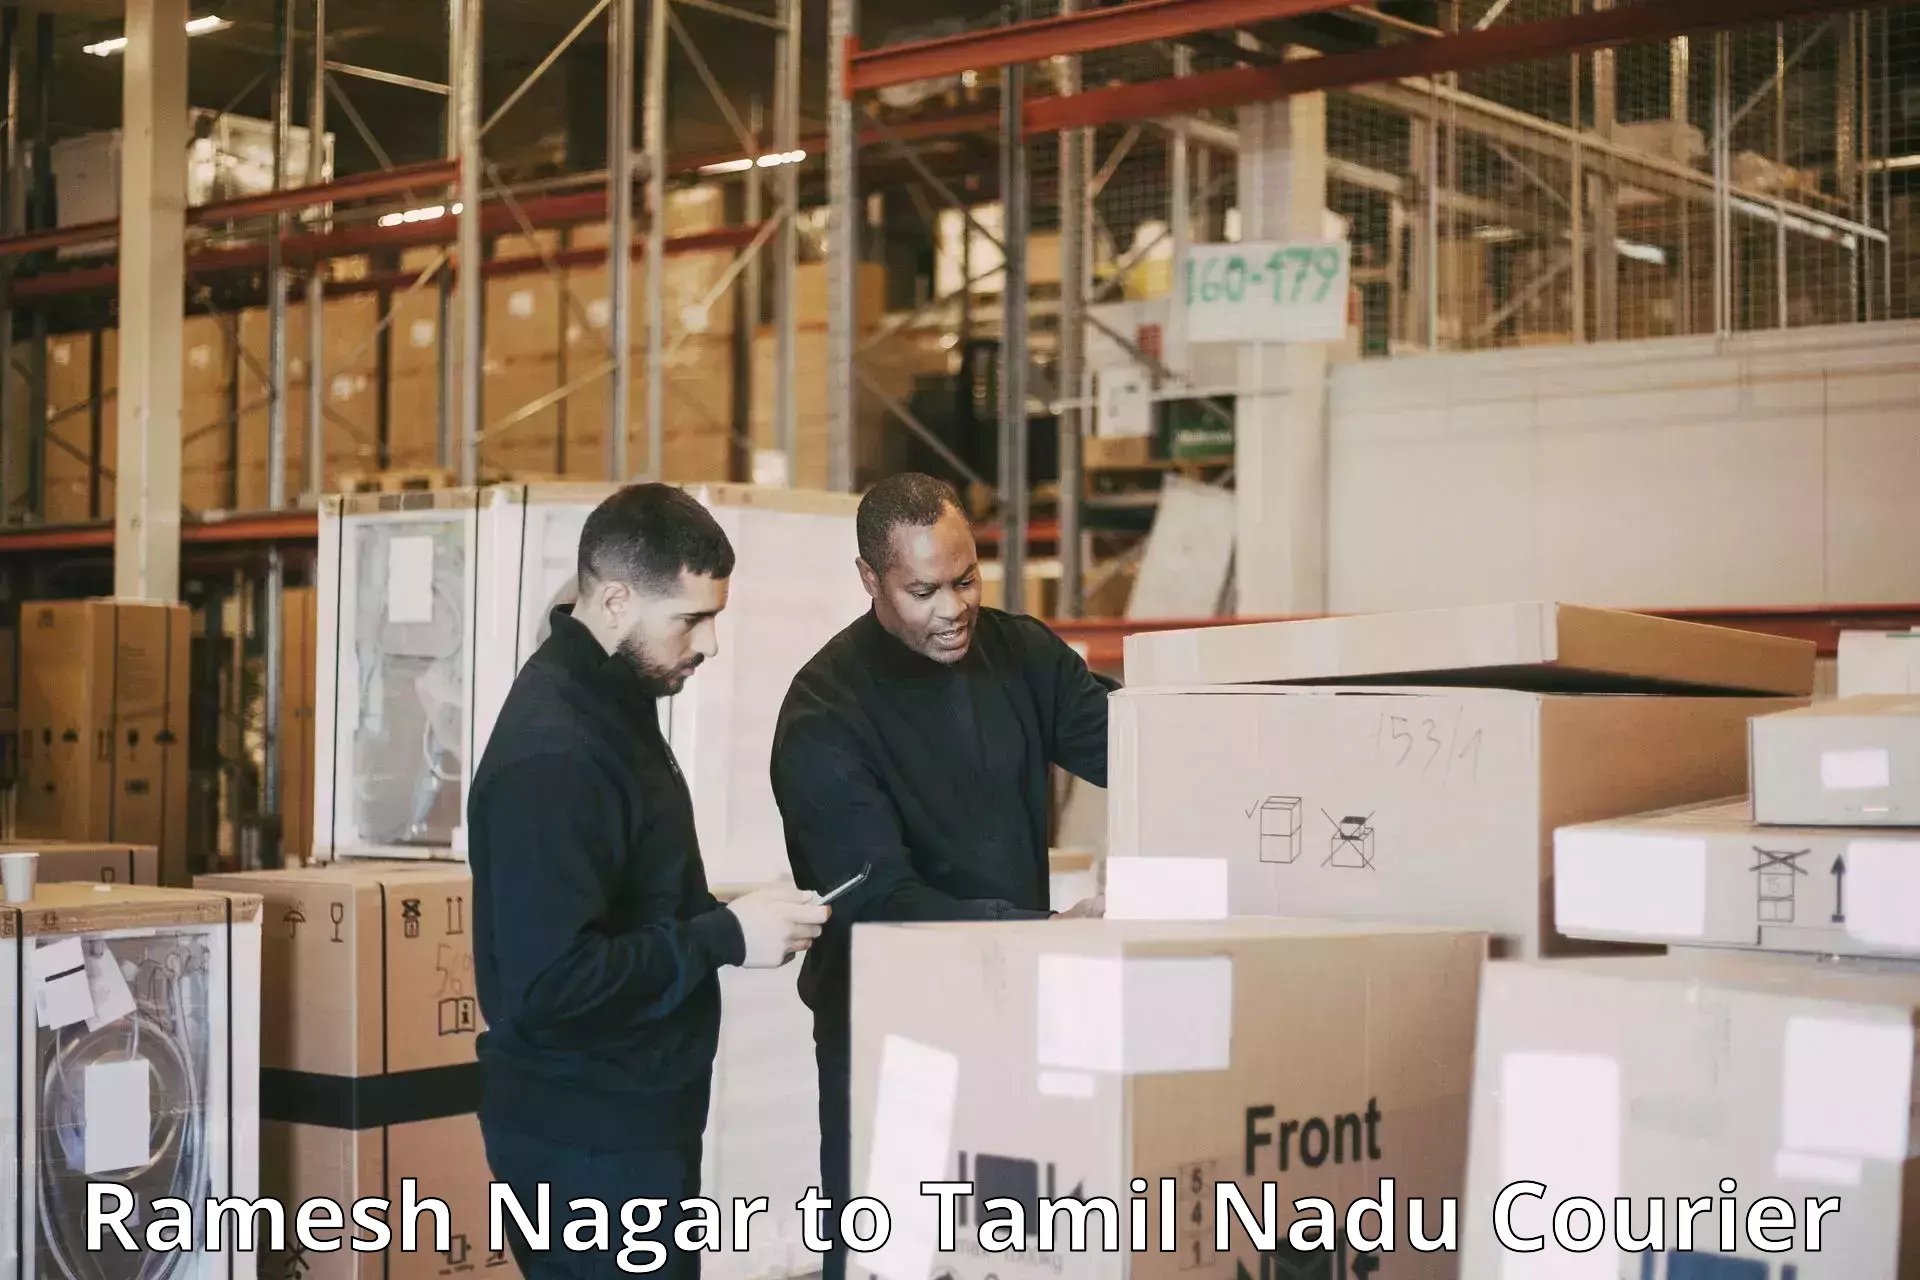 Next-generation courier services Ramesh Nagar to Tamil Nadu